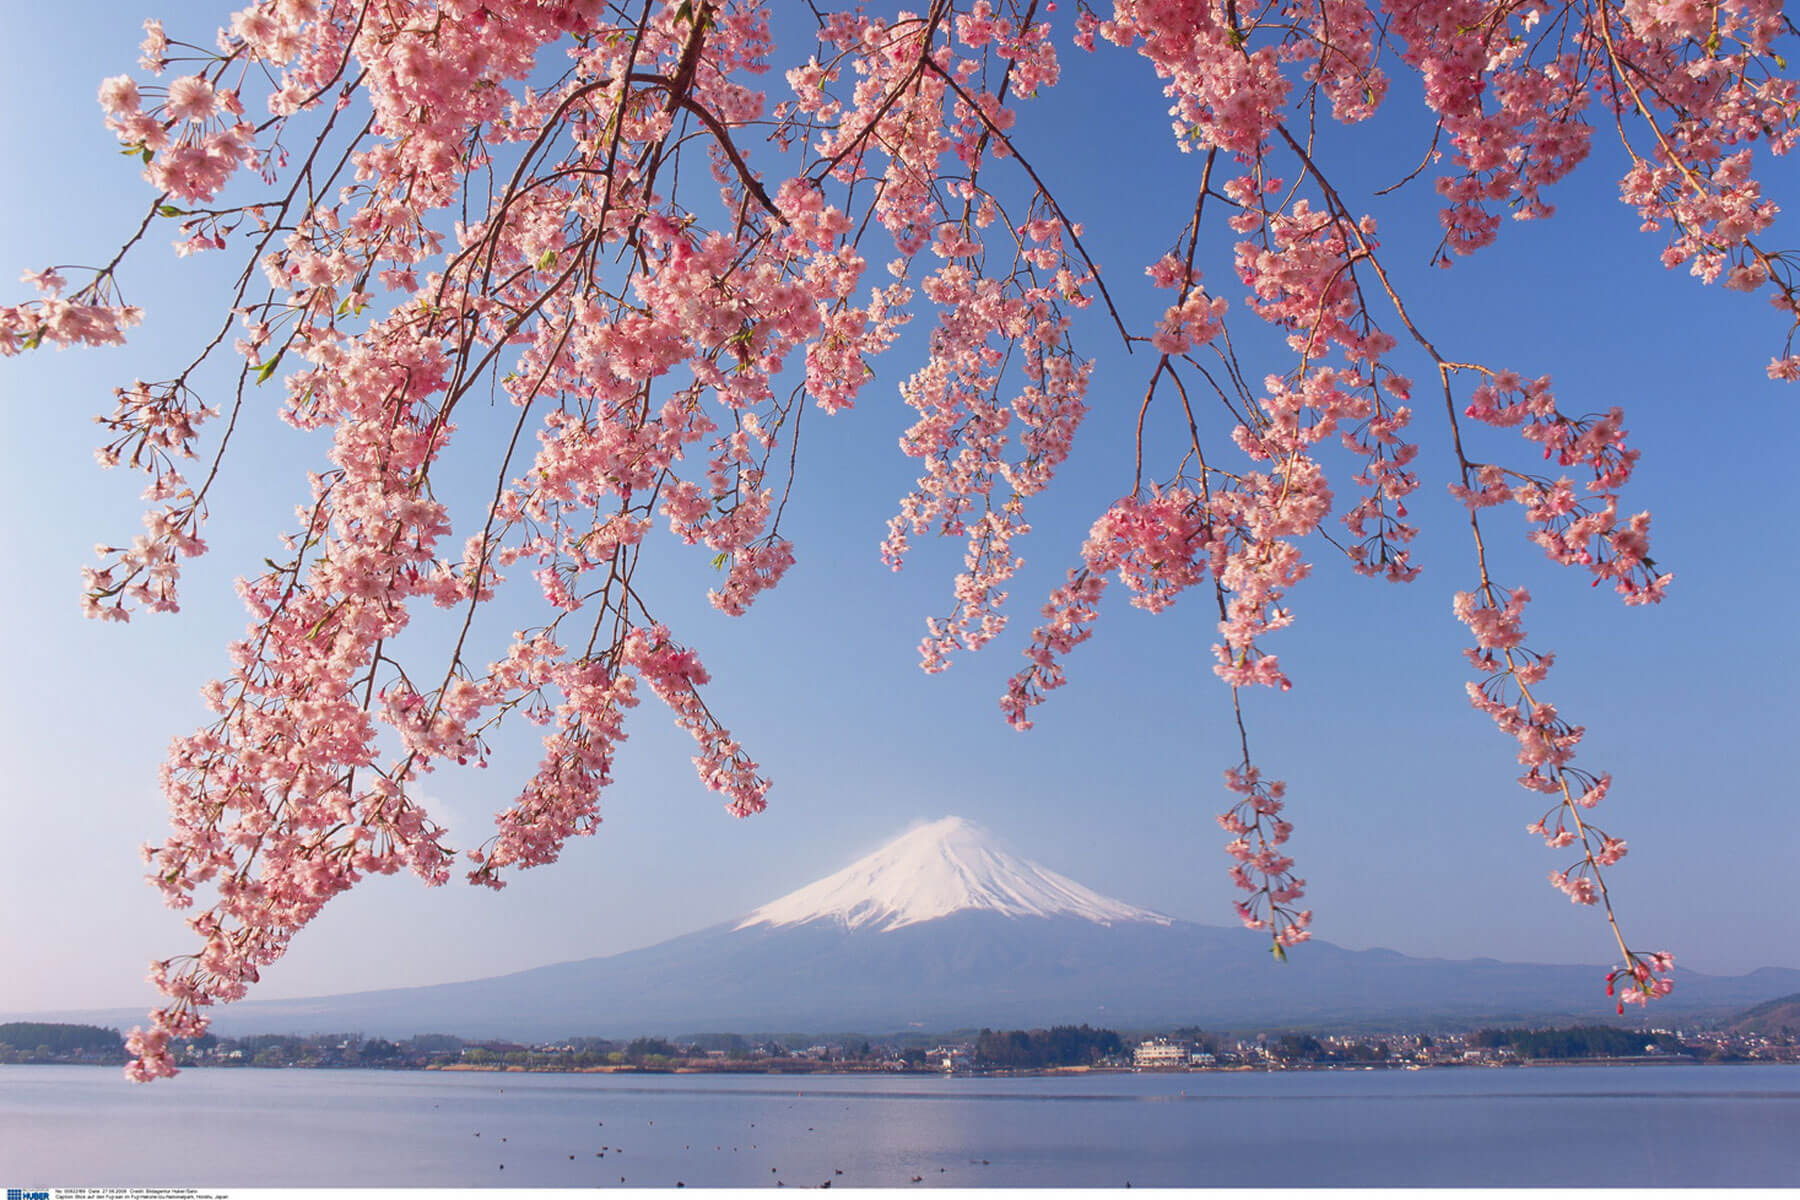 Japanische Kirschblüten Hanami - die beste Reisezeit ist etwa Mitte März bis Mitte April